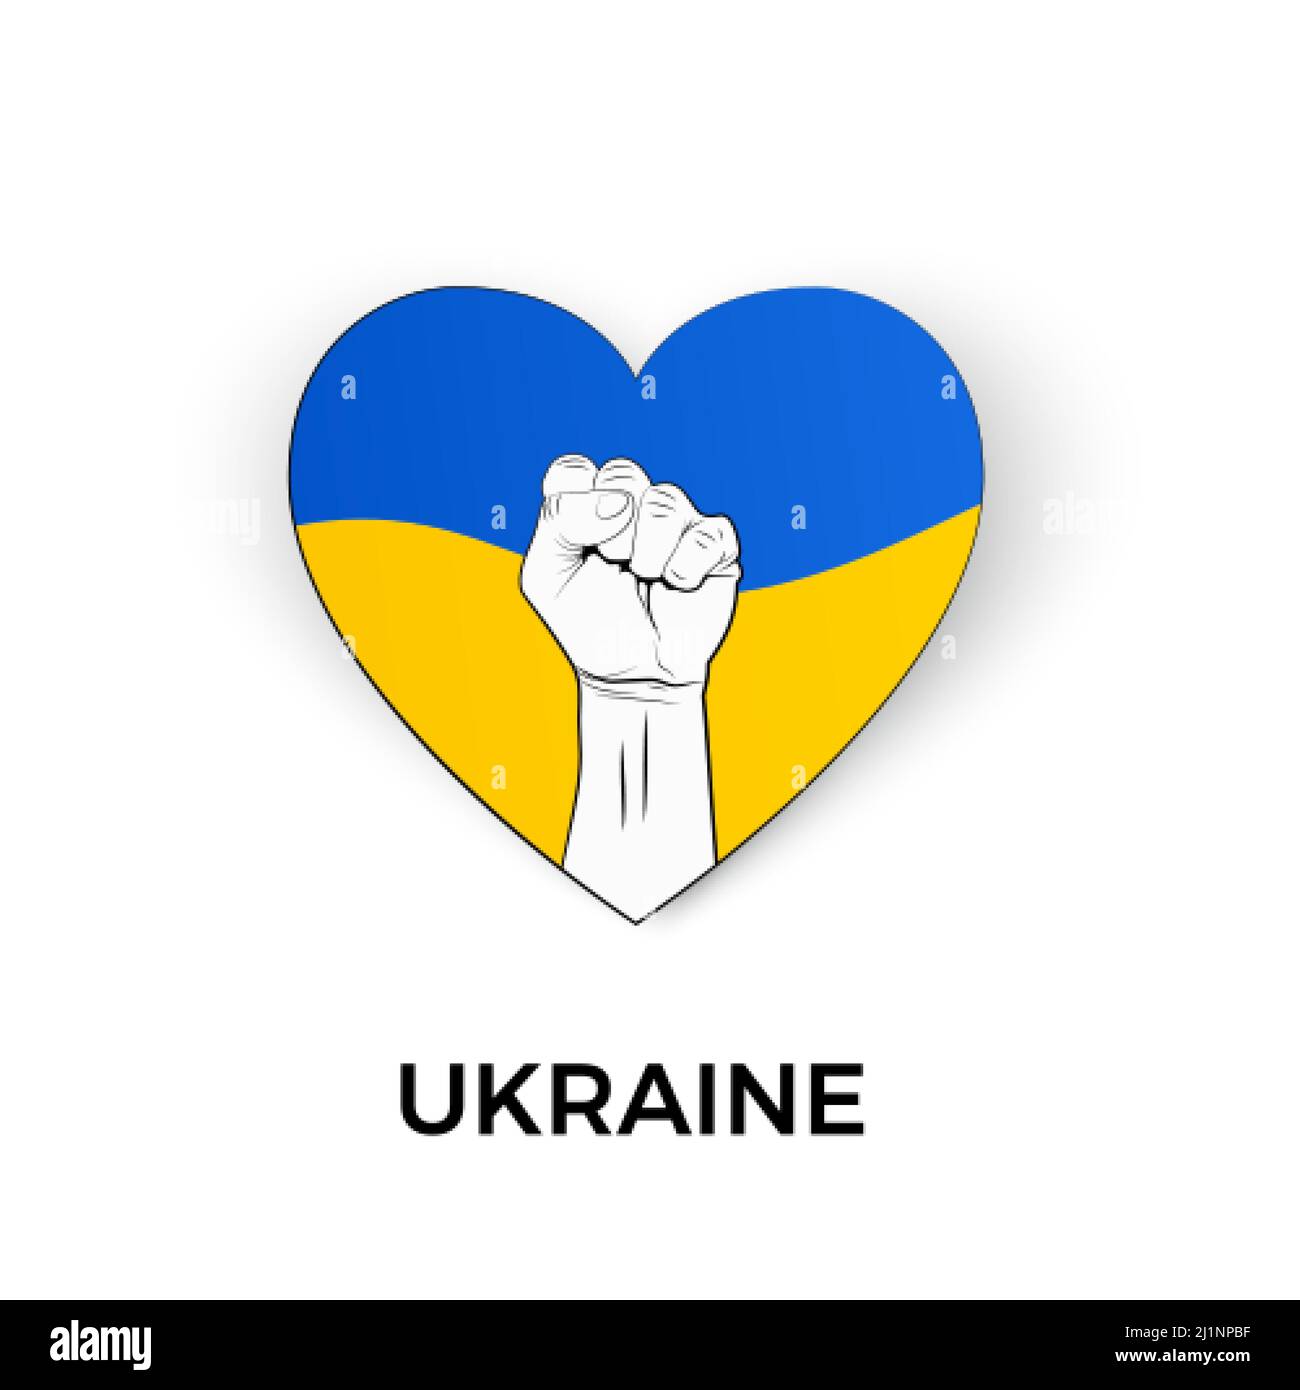 Herz Silhouette in ukrainischen Nationalflaggenfarben und Faust Symbol. Unterstützt die Ukraine im Krieg. Stoppt die militärische Invasion. Rettet Menschen und gebt ihnen Hoffnung. Vec Stock Vektor